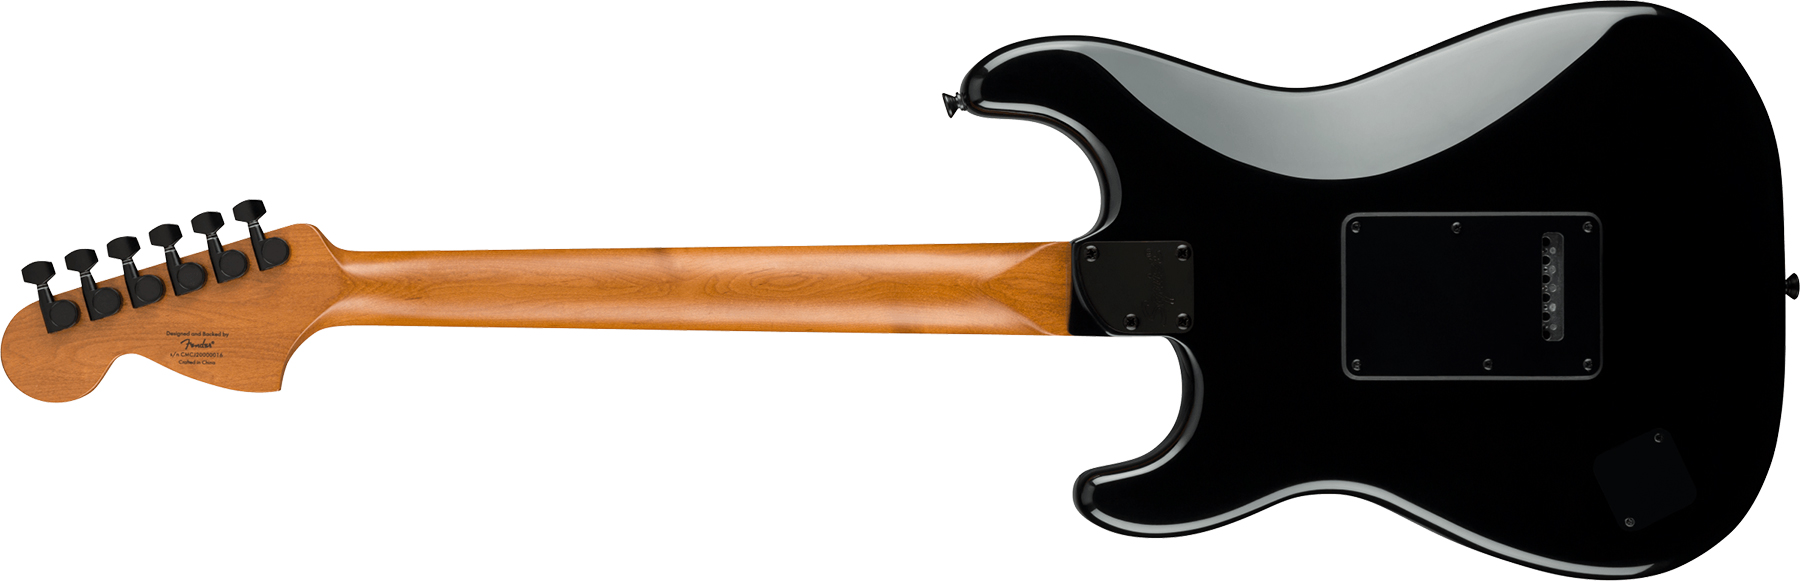 Squier Strat Contemporary Special Sss Trem Mn - Black - Elektrische gitaar in Str-vorm - Variation 1